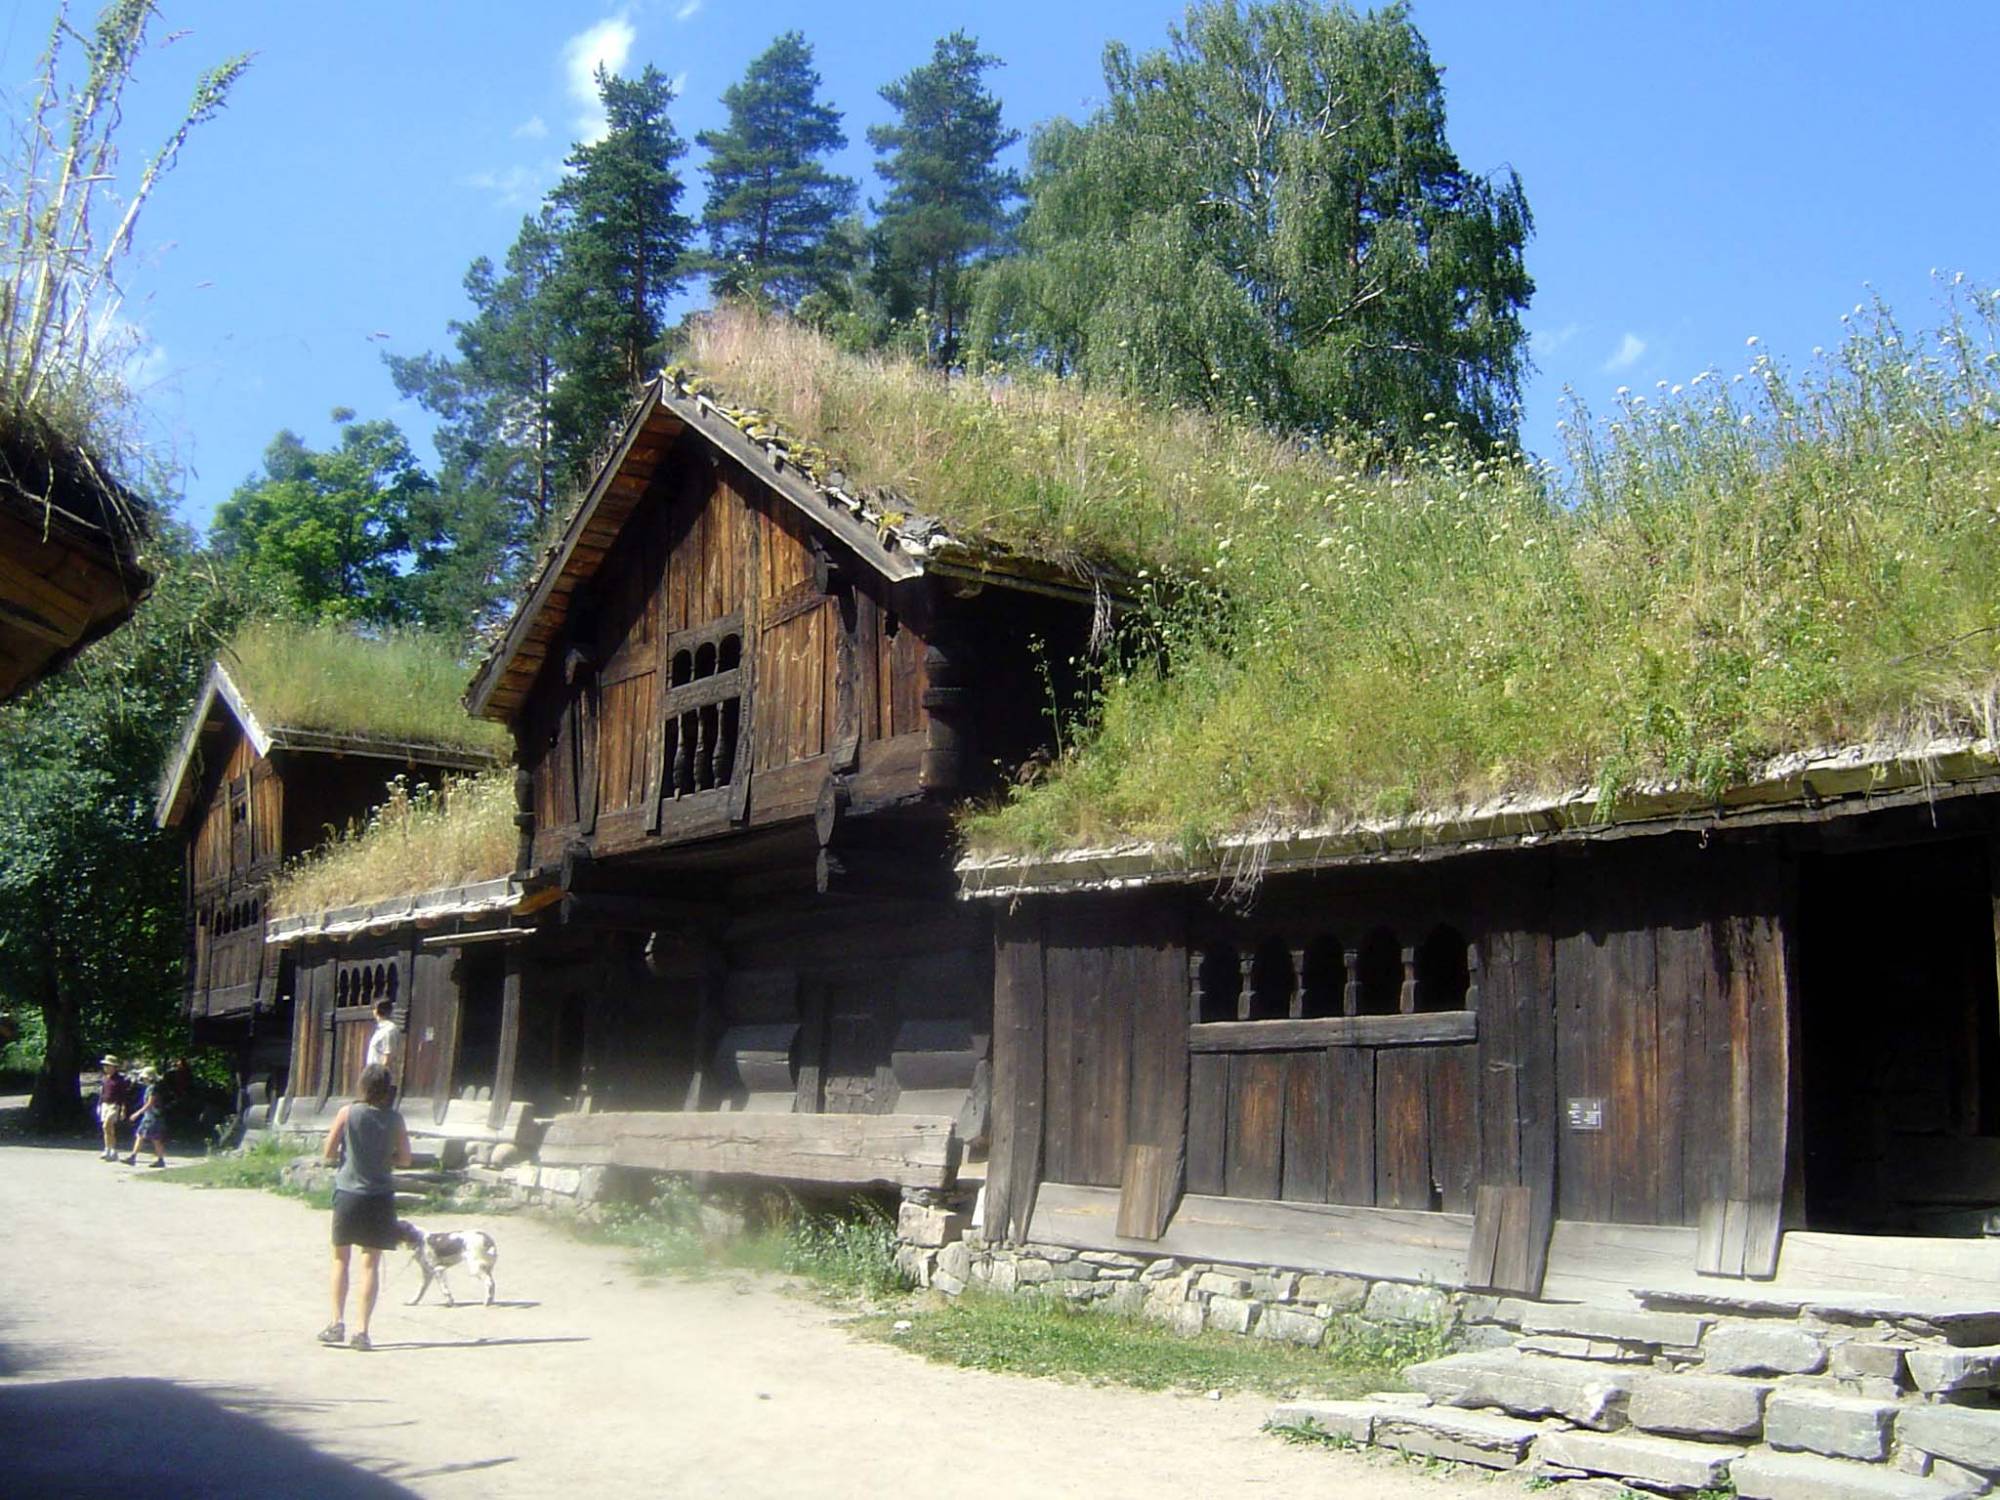 Oslo - Norwegian Folk Museum